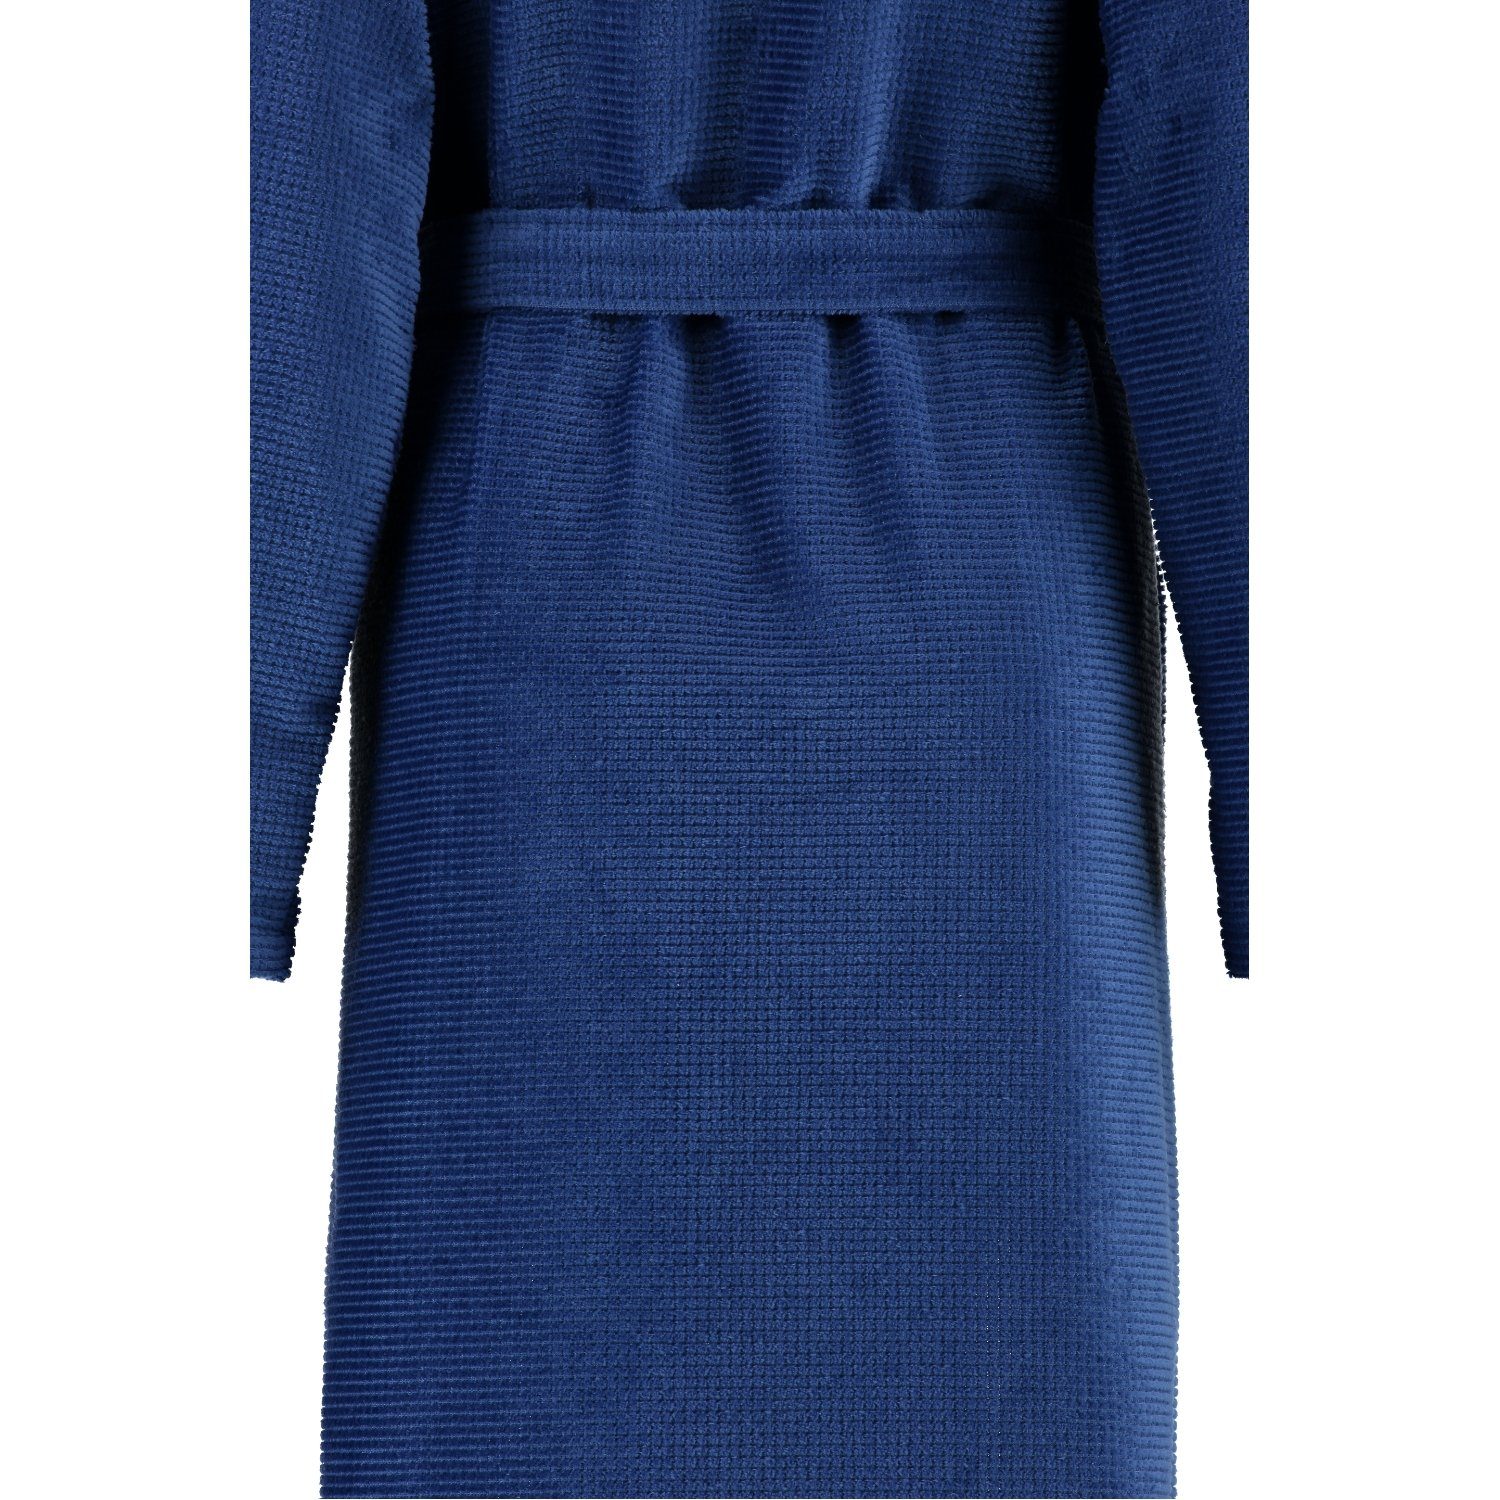 Baumwolle, Reißverschluss, Mit Reißverschluss Langform, Cawö blau Reißverschluss, einem 4311, 115 Damenbademantel Mit